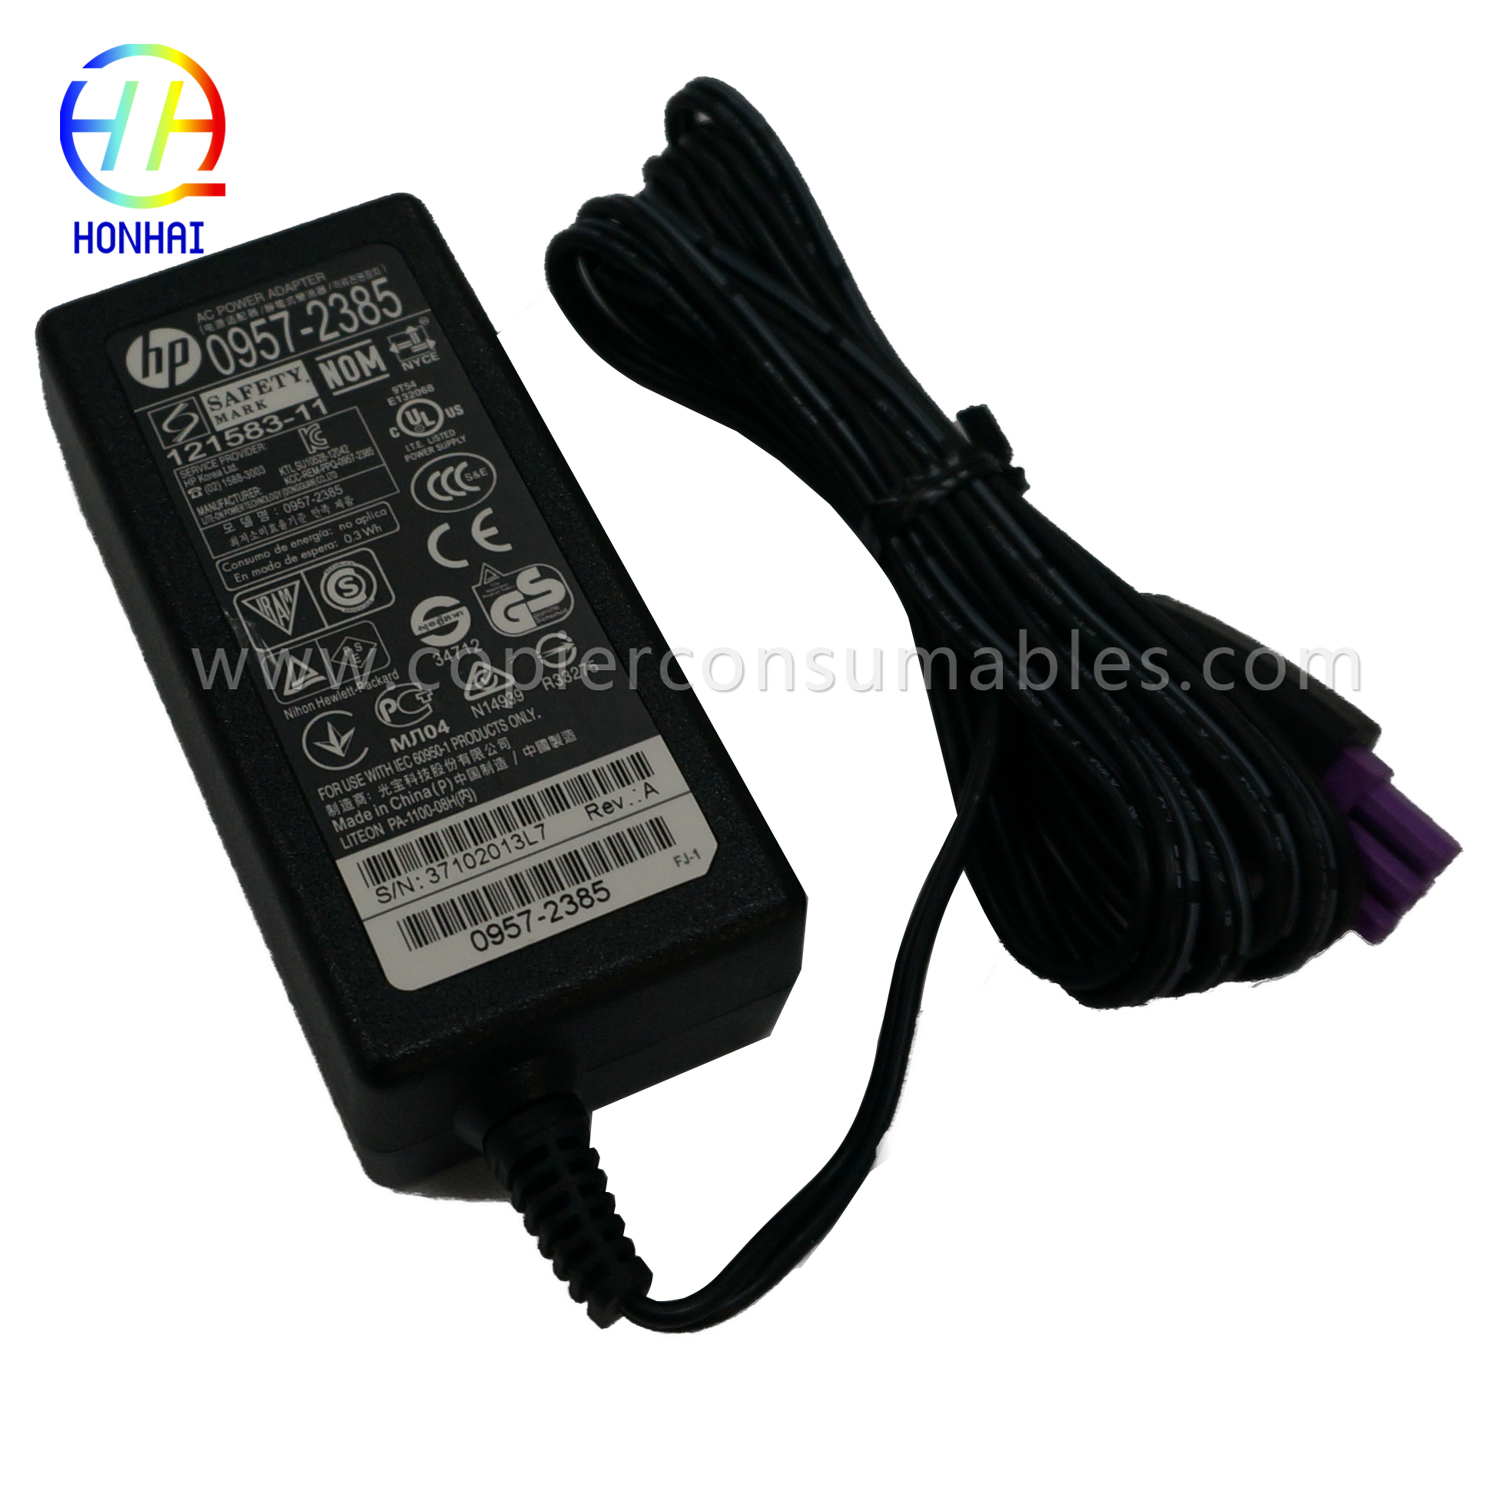 Power Adapter fir HP 1010 1510 1518 0957-2385